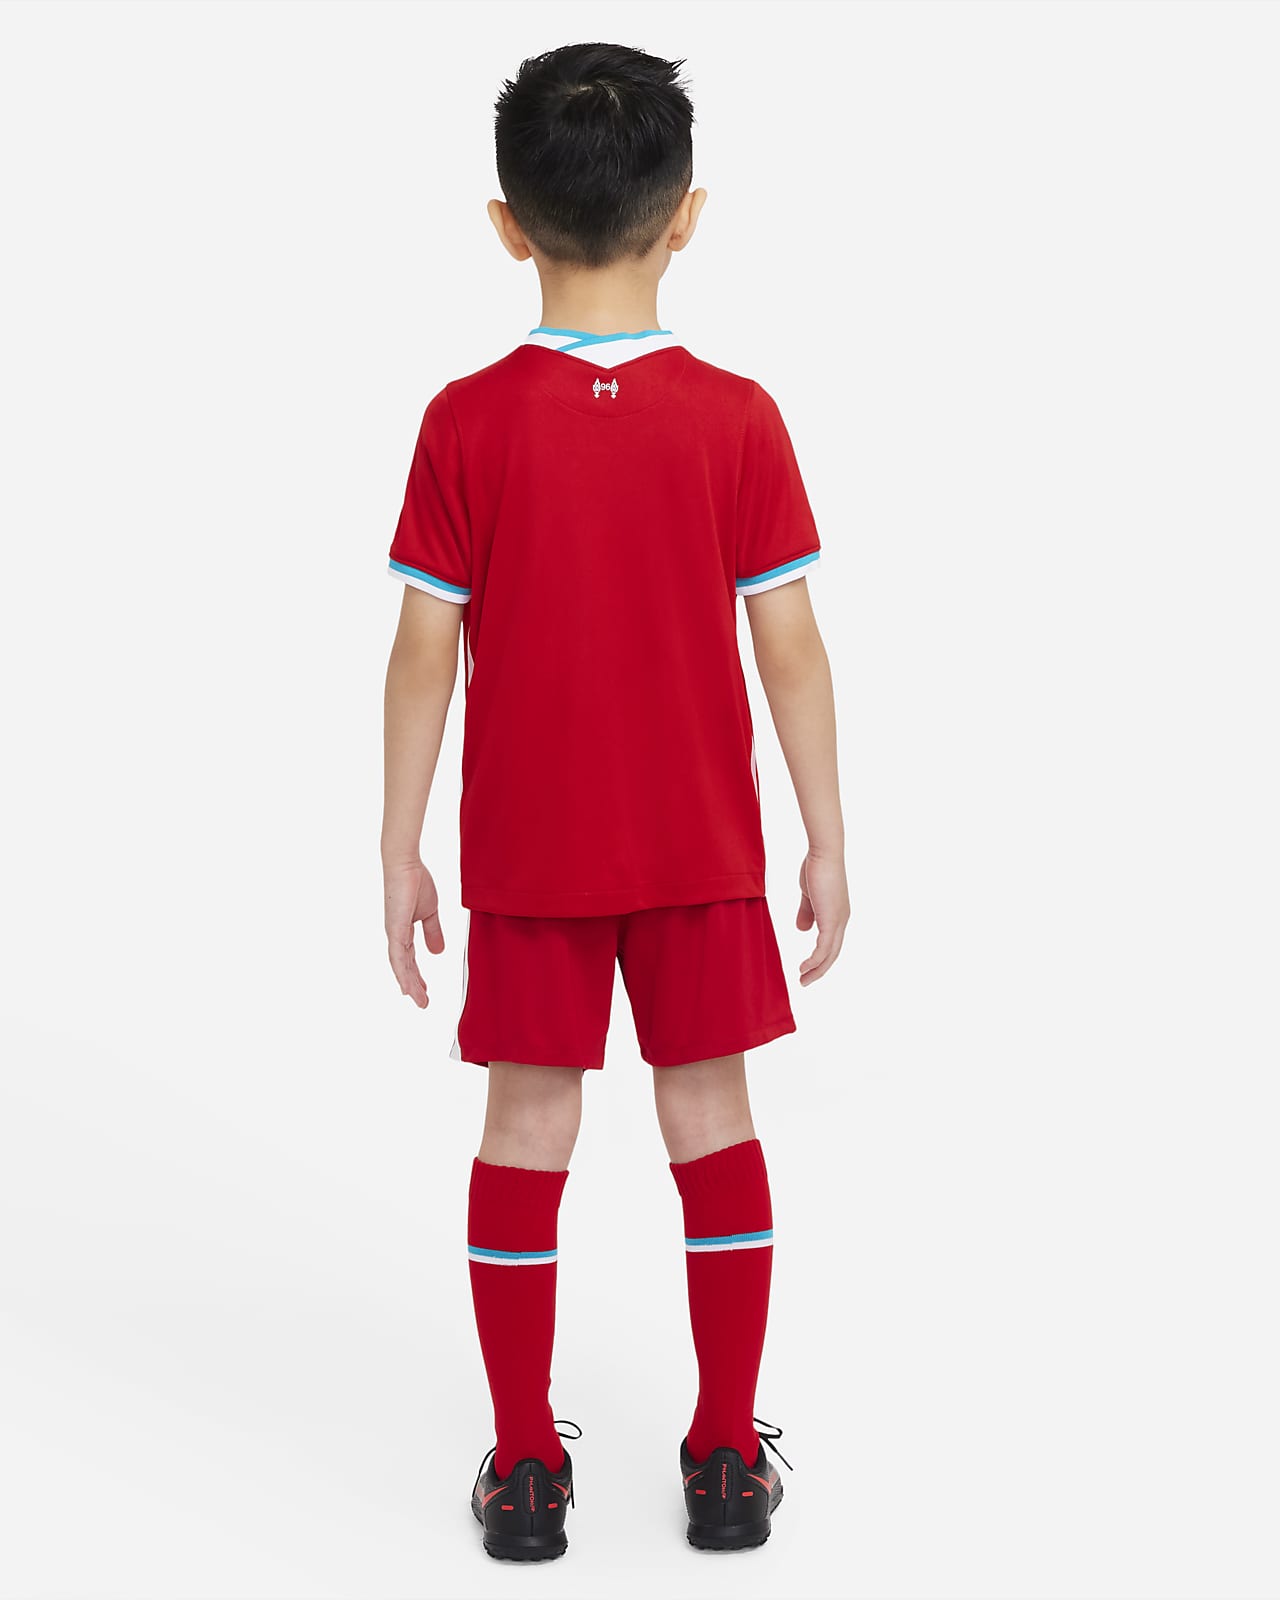 2020 Soccer Black Home Football Club Socks For Men Boys Child Youth Long Socks 